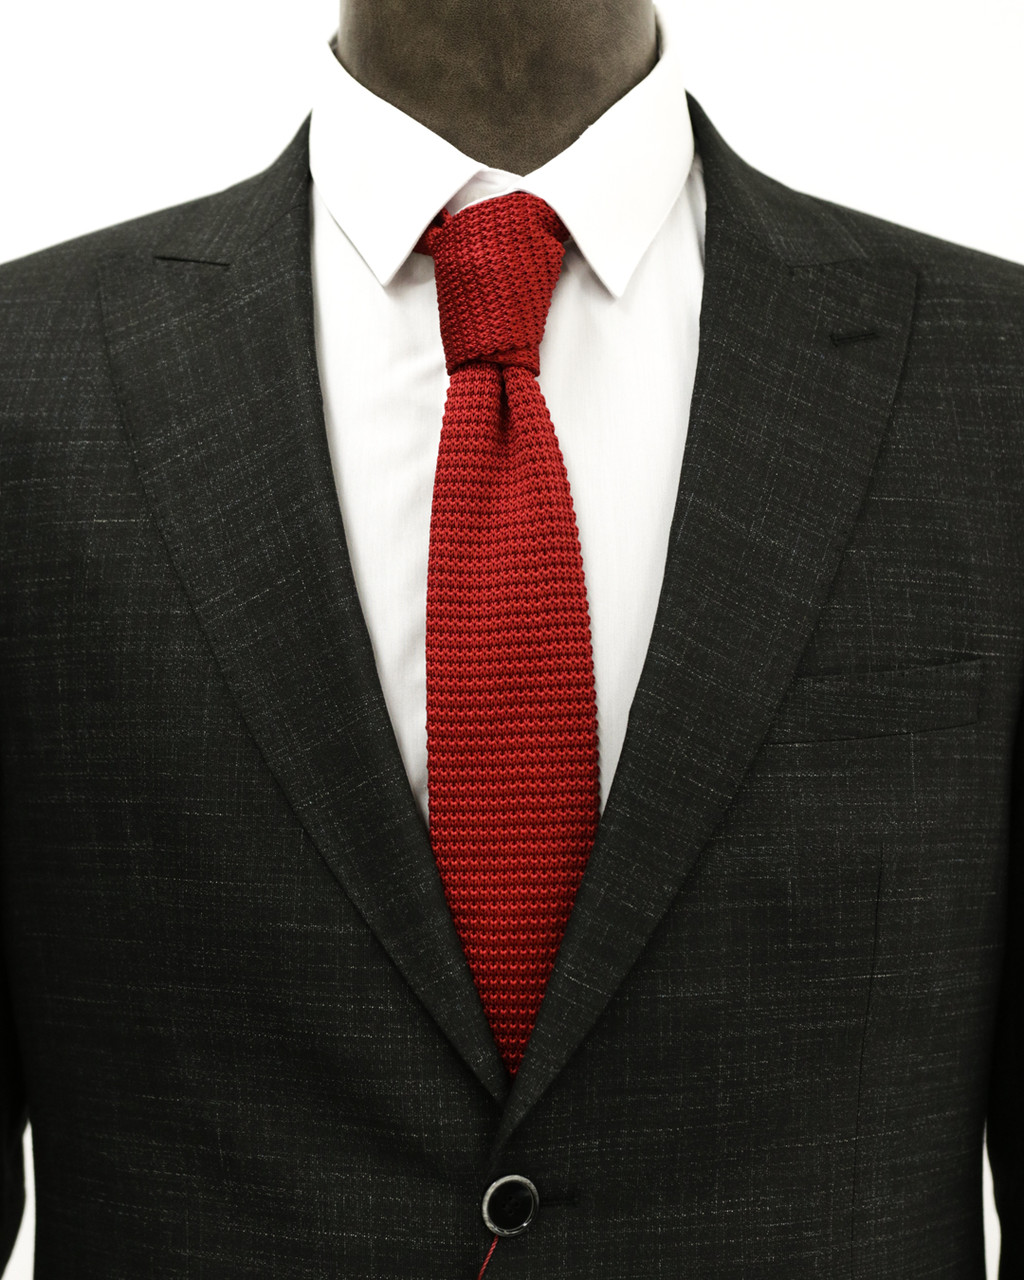 Мужской галстук «UM&H jrs13» бордовый (полиэстер), фото 1